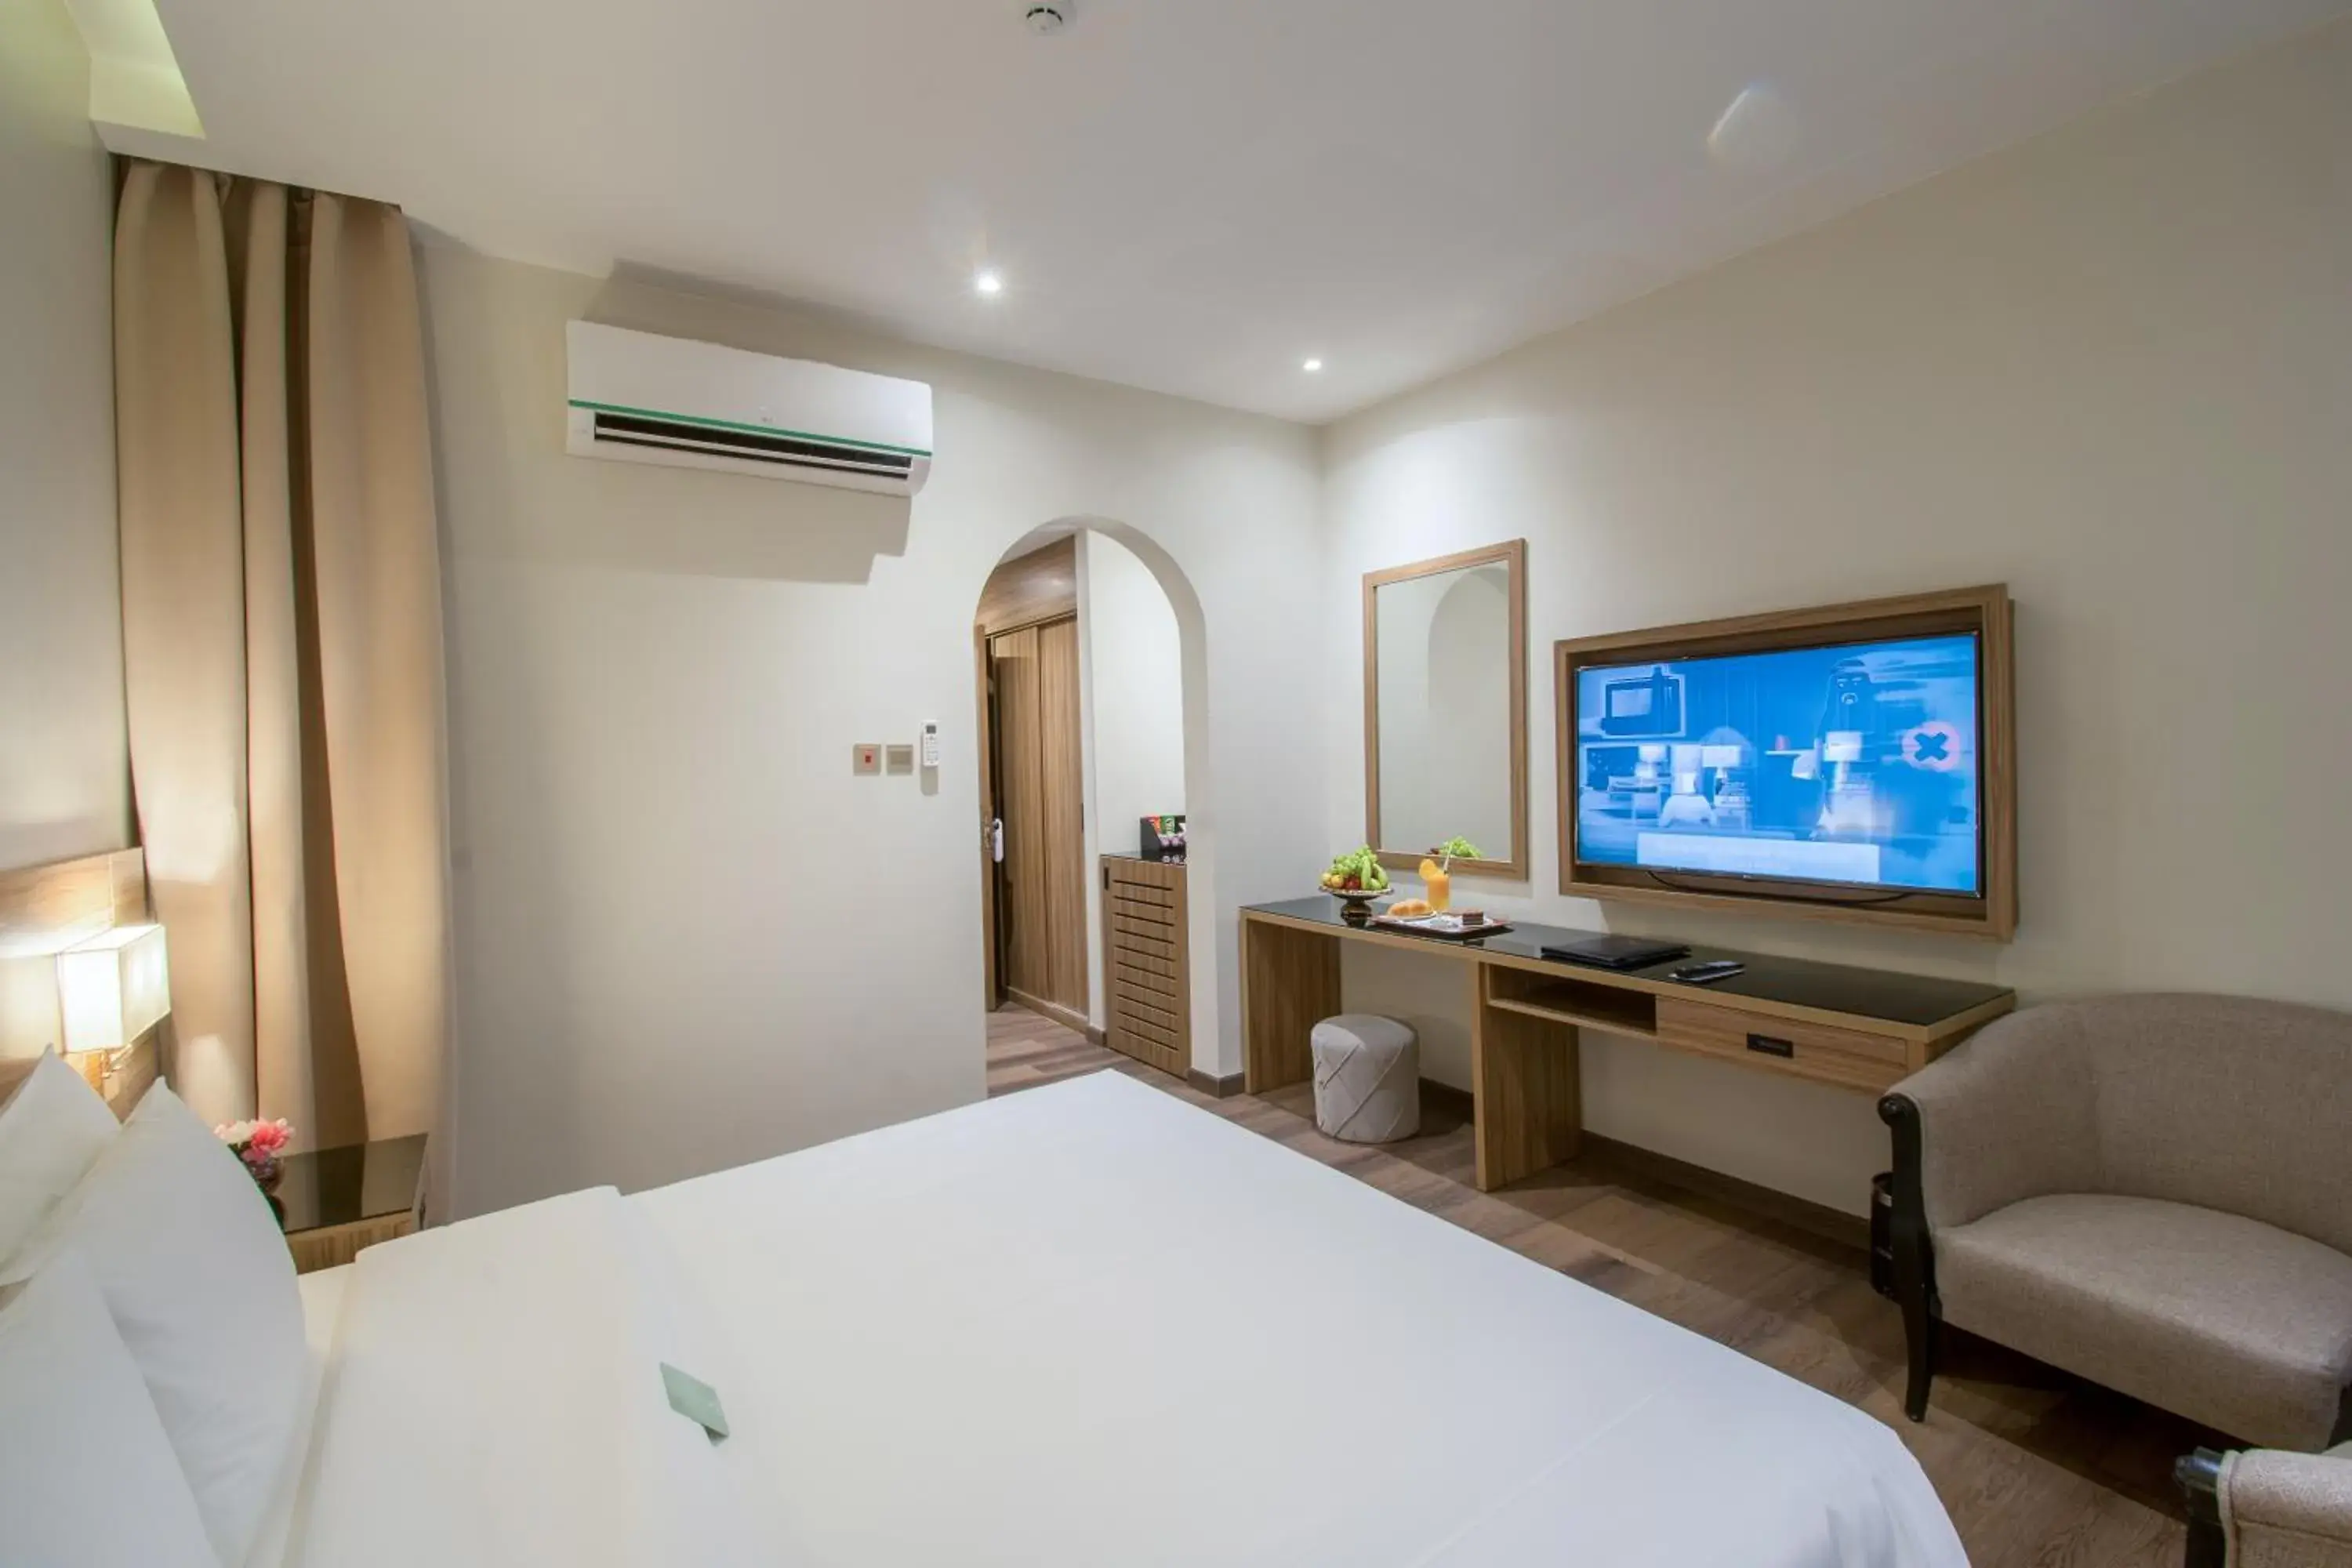 Bedroom, TV/Entertainment Center in Boudl Al Fayhaa